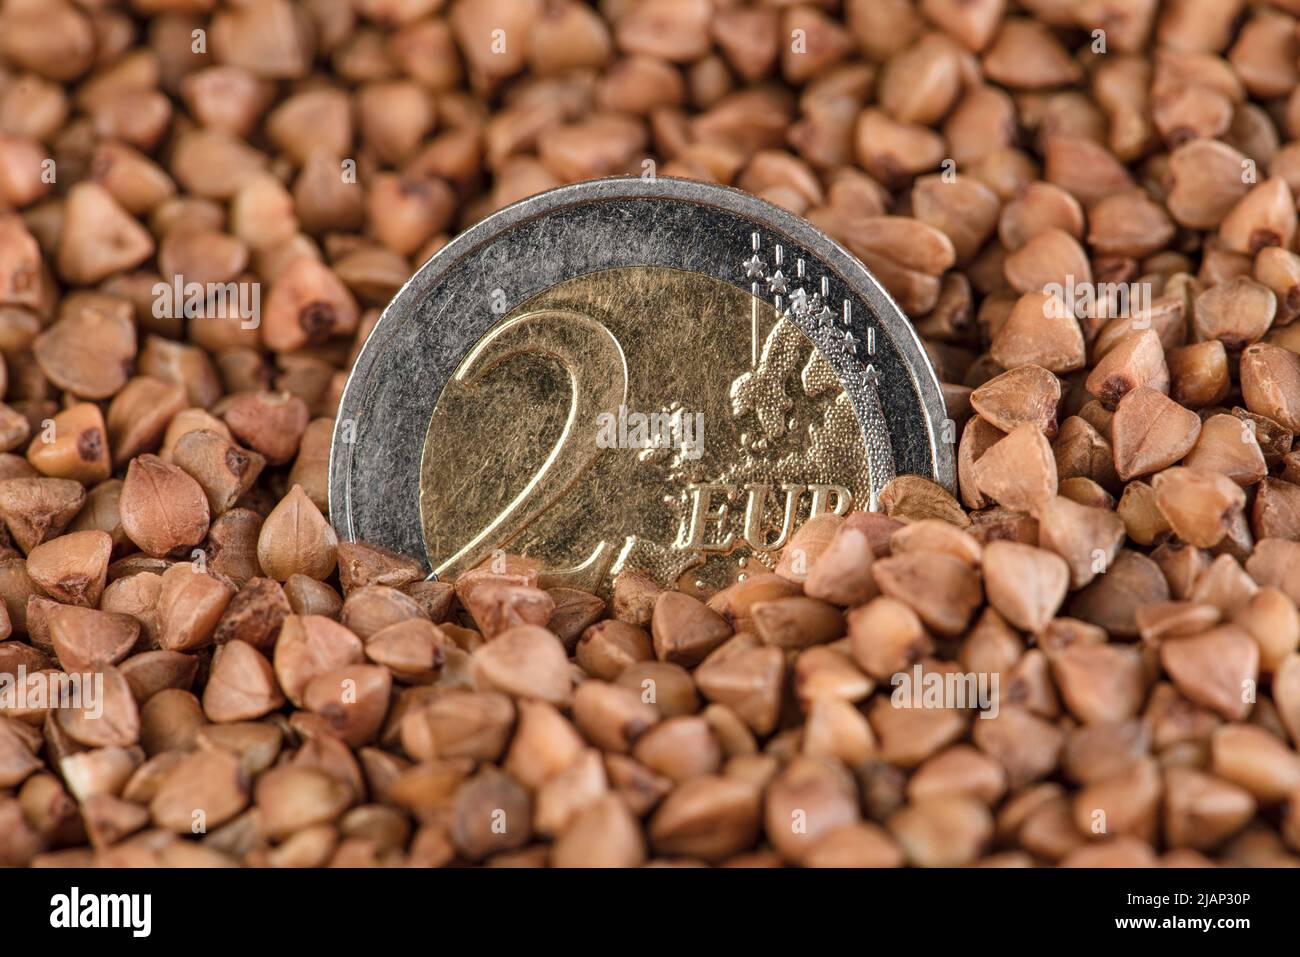 Precios del trigo sarraceno en Europa, precios en aumento para los cultivos. Crisis alimentaria mundial. El gráfico apunta hacia arriba. Mercado financiero europeo. Foto de stock